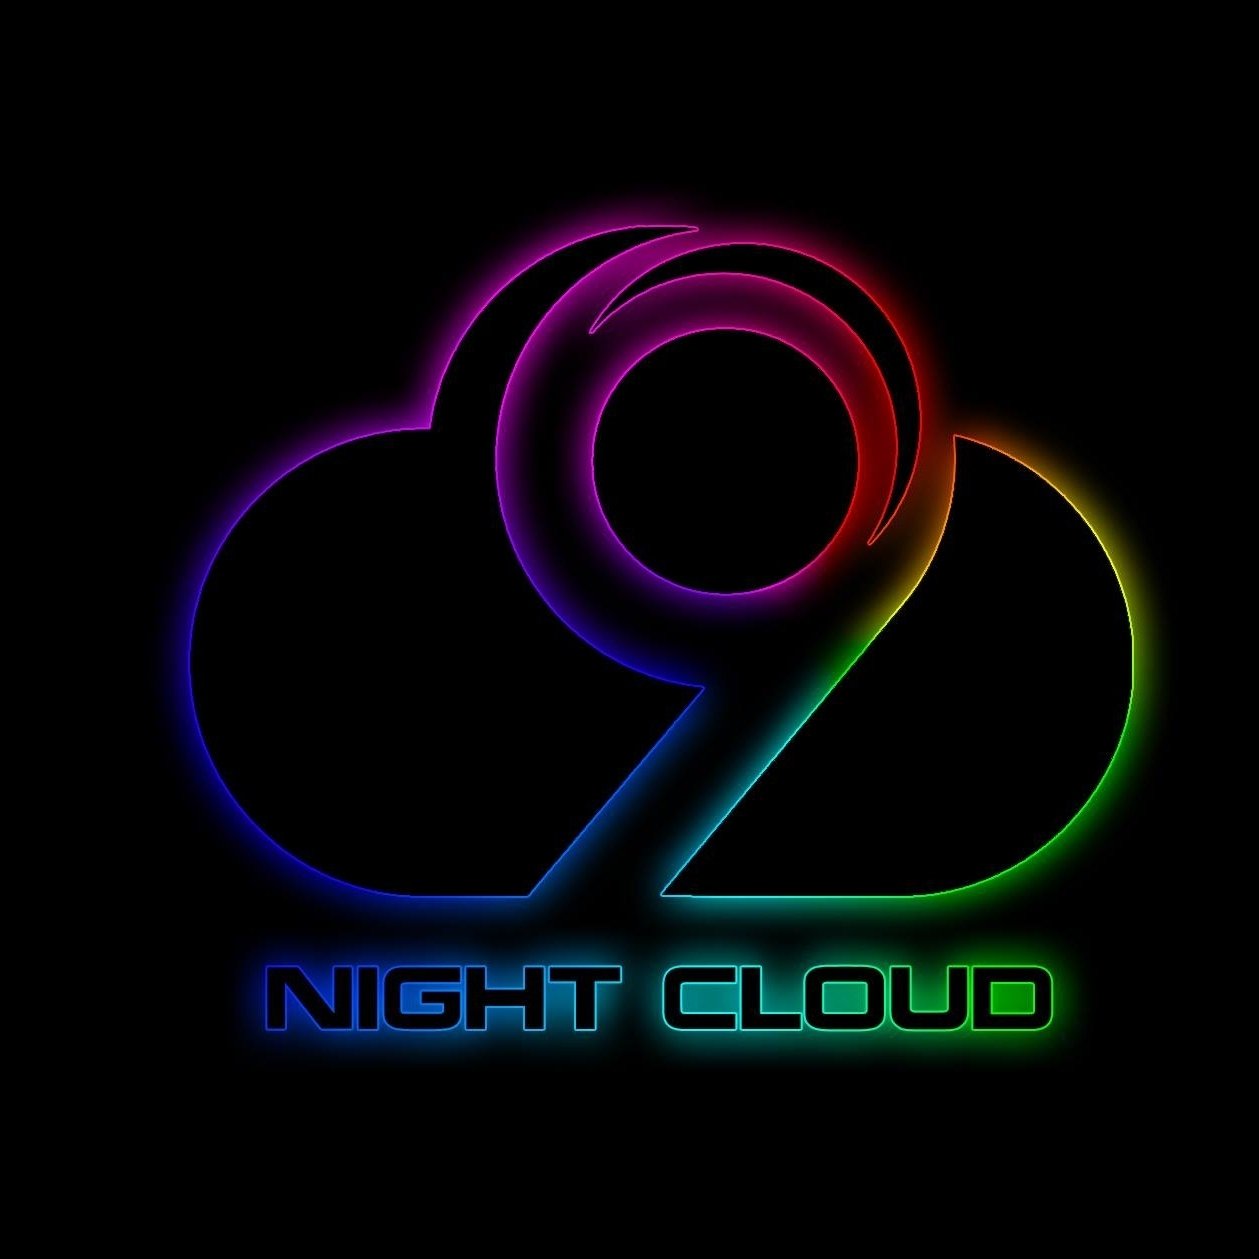 NightCloud Vape SG (u/Nightcloudvapesg) - Reddit